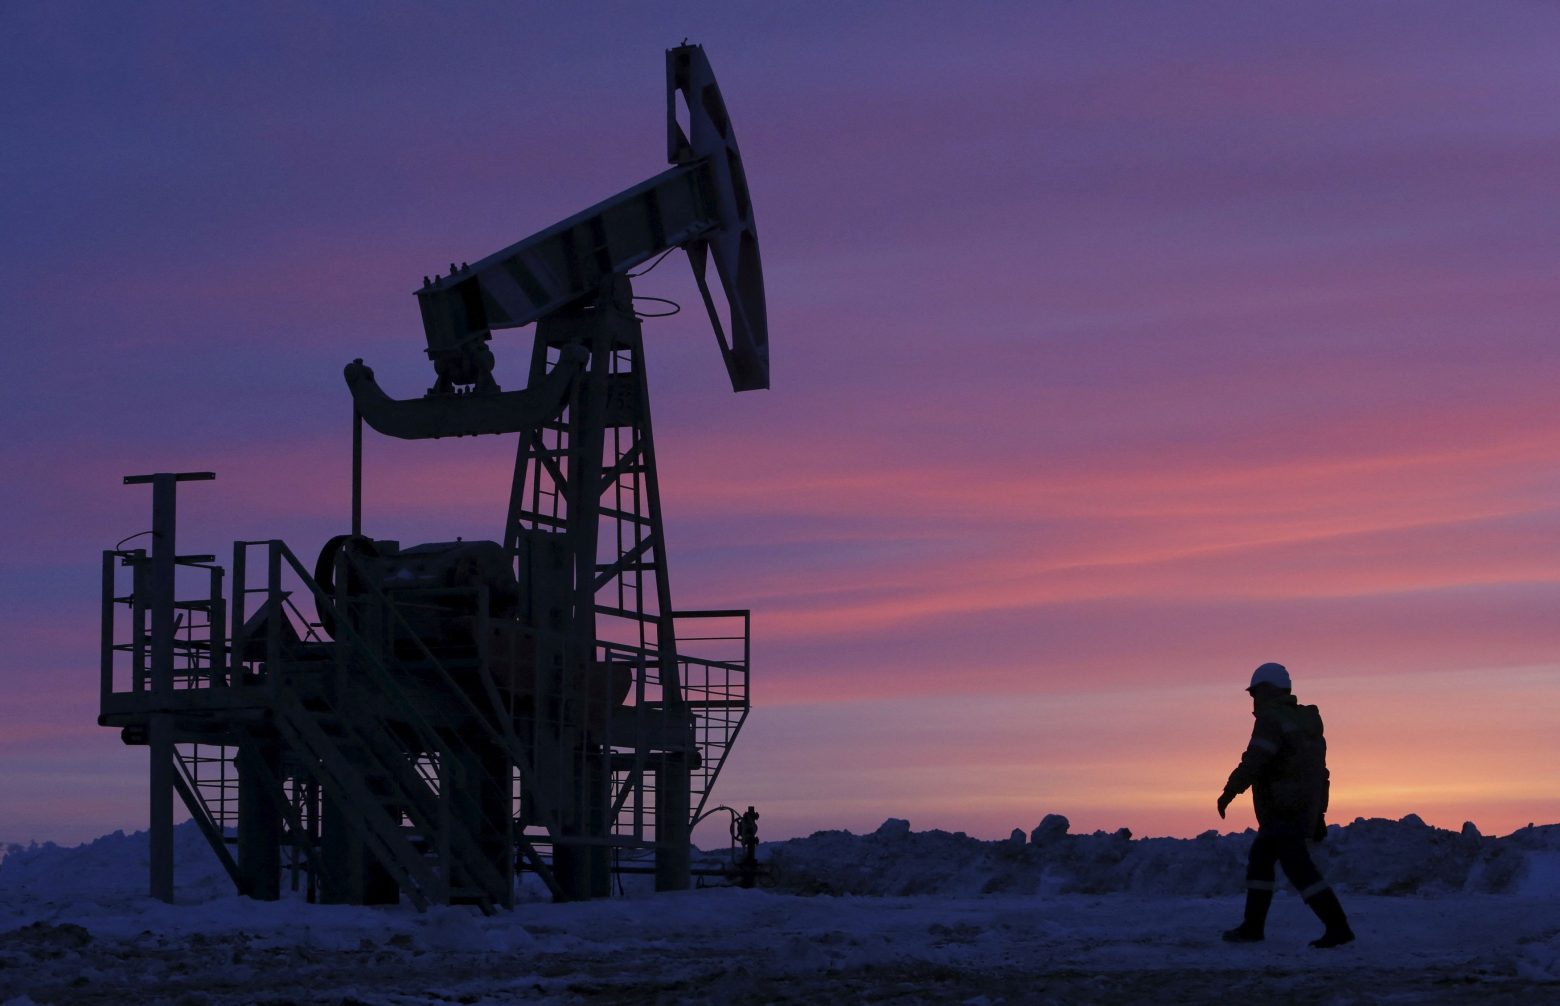 Πτώση παραγωγής πετρελαίου εξετάζει ο ΟΠΕΚ , εν μέσω αντιδράσεων από τις ΗΠΑ